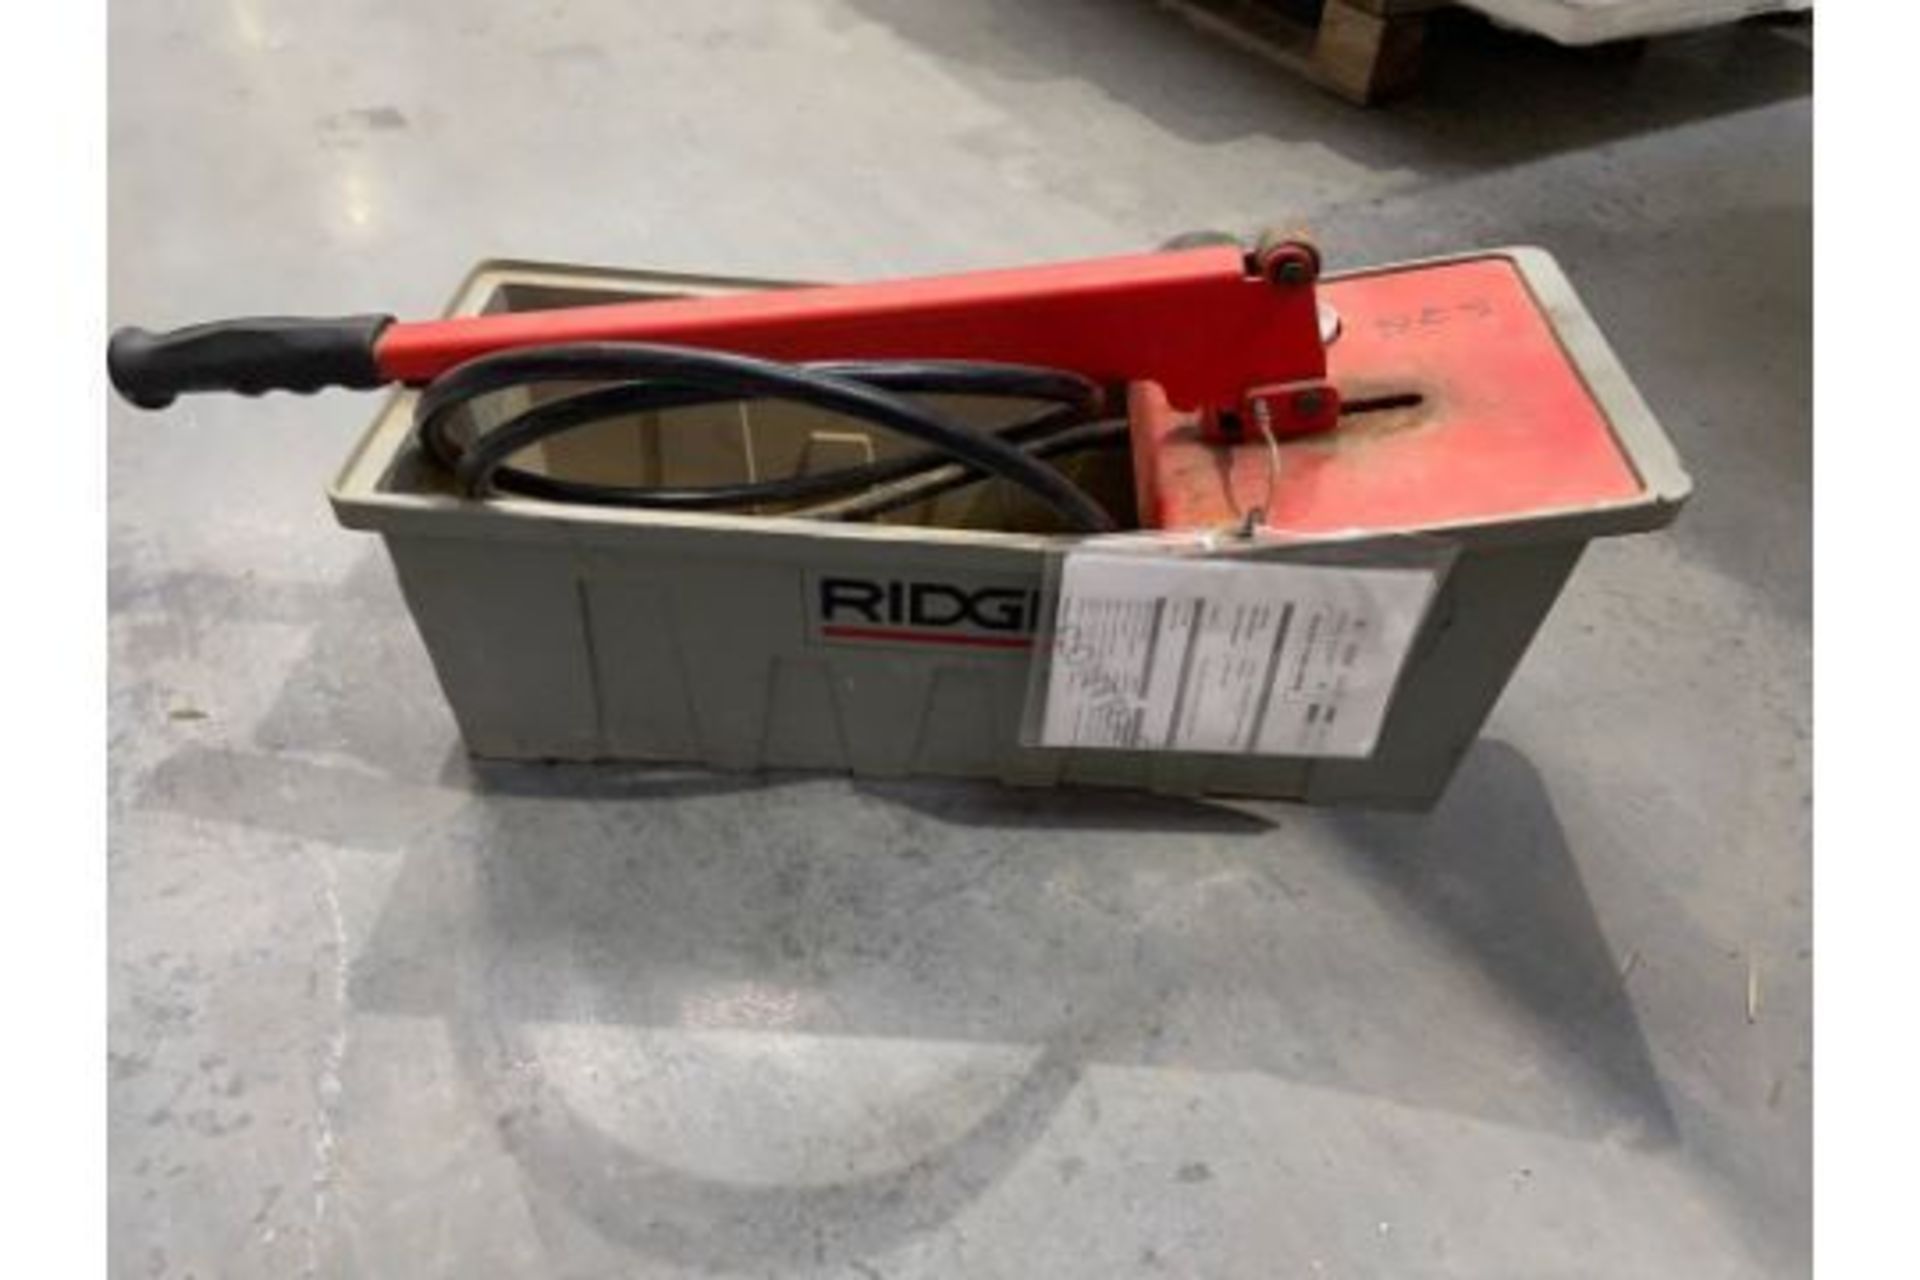 Ridgid 1450 Pressure Tester-Manual Pump - Image 3 of 4